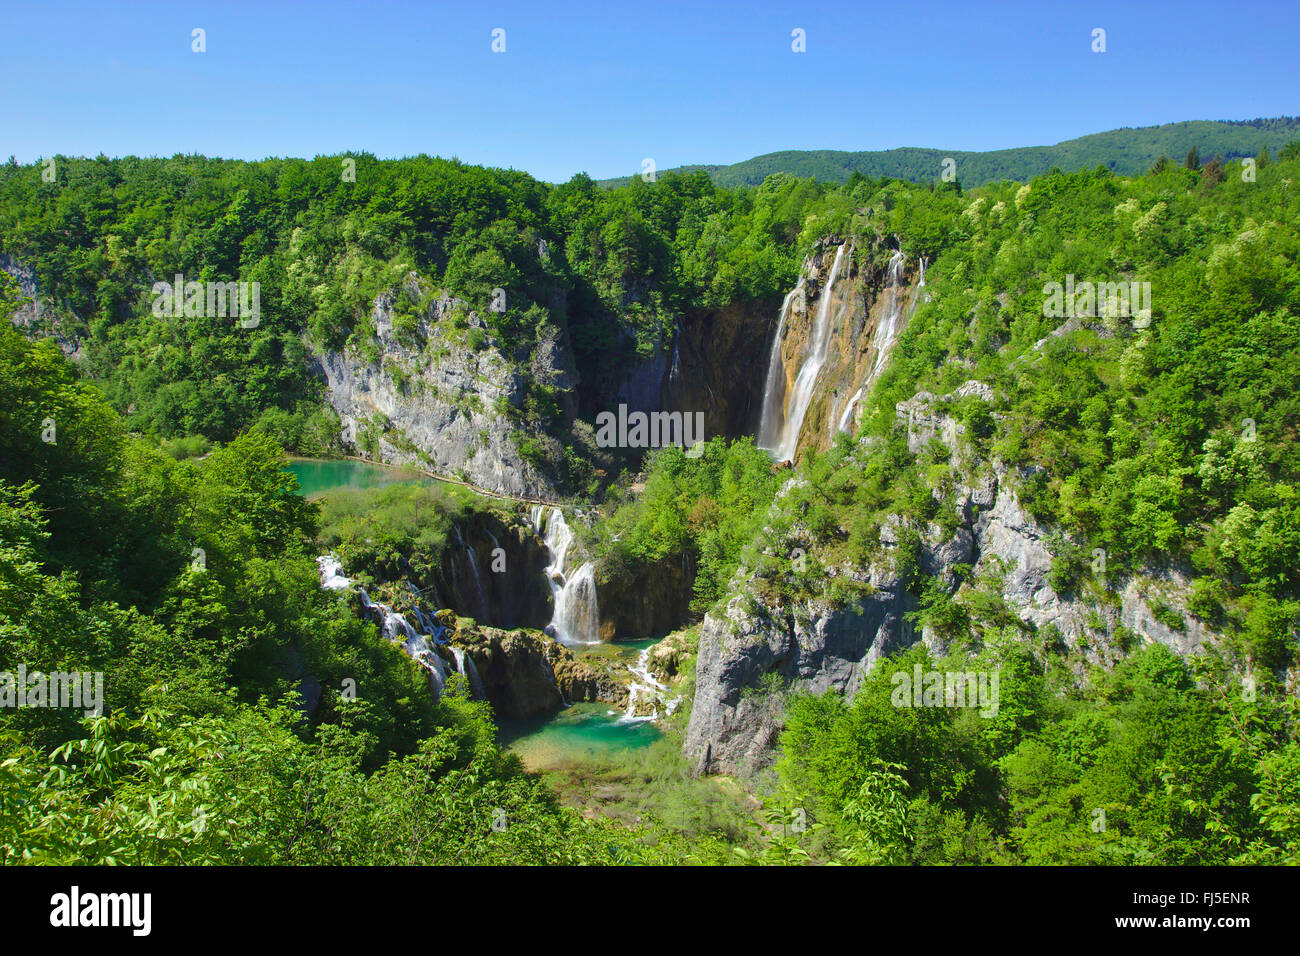 Les lacs de Plitvice avec grande chute d'eau, la Croatie, le parc national des Lacs de Plitvice Banque D'Images